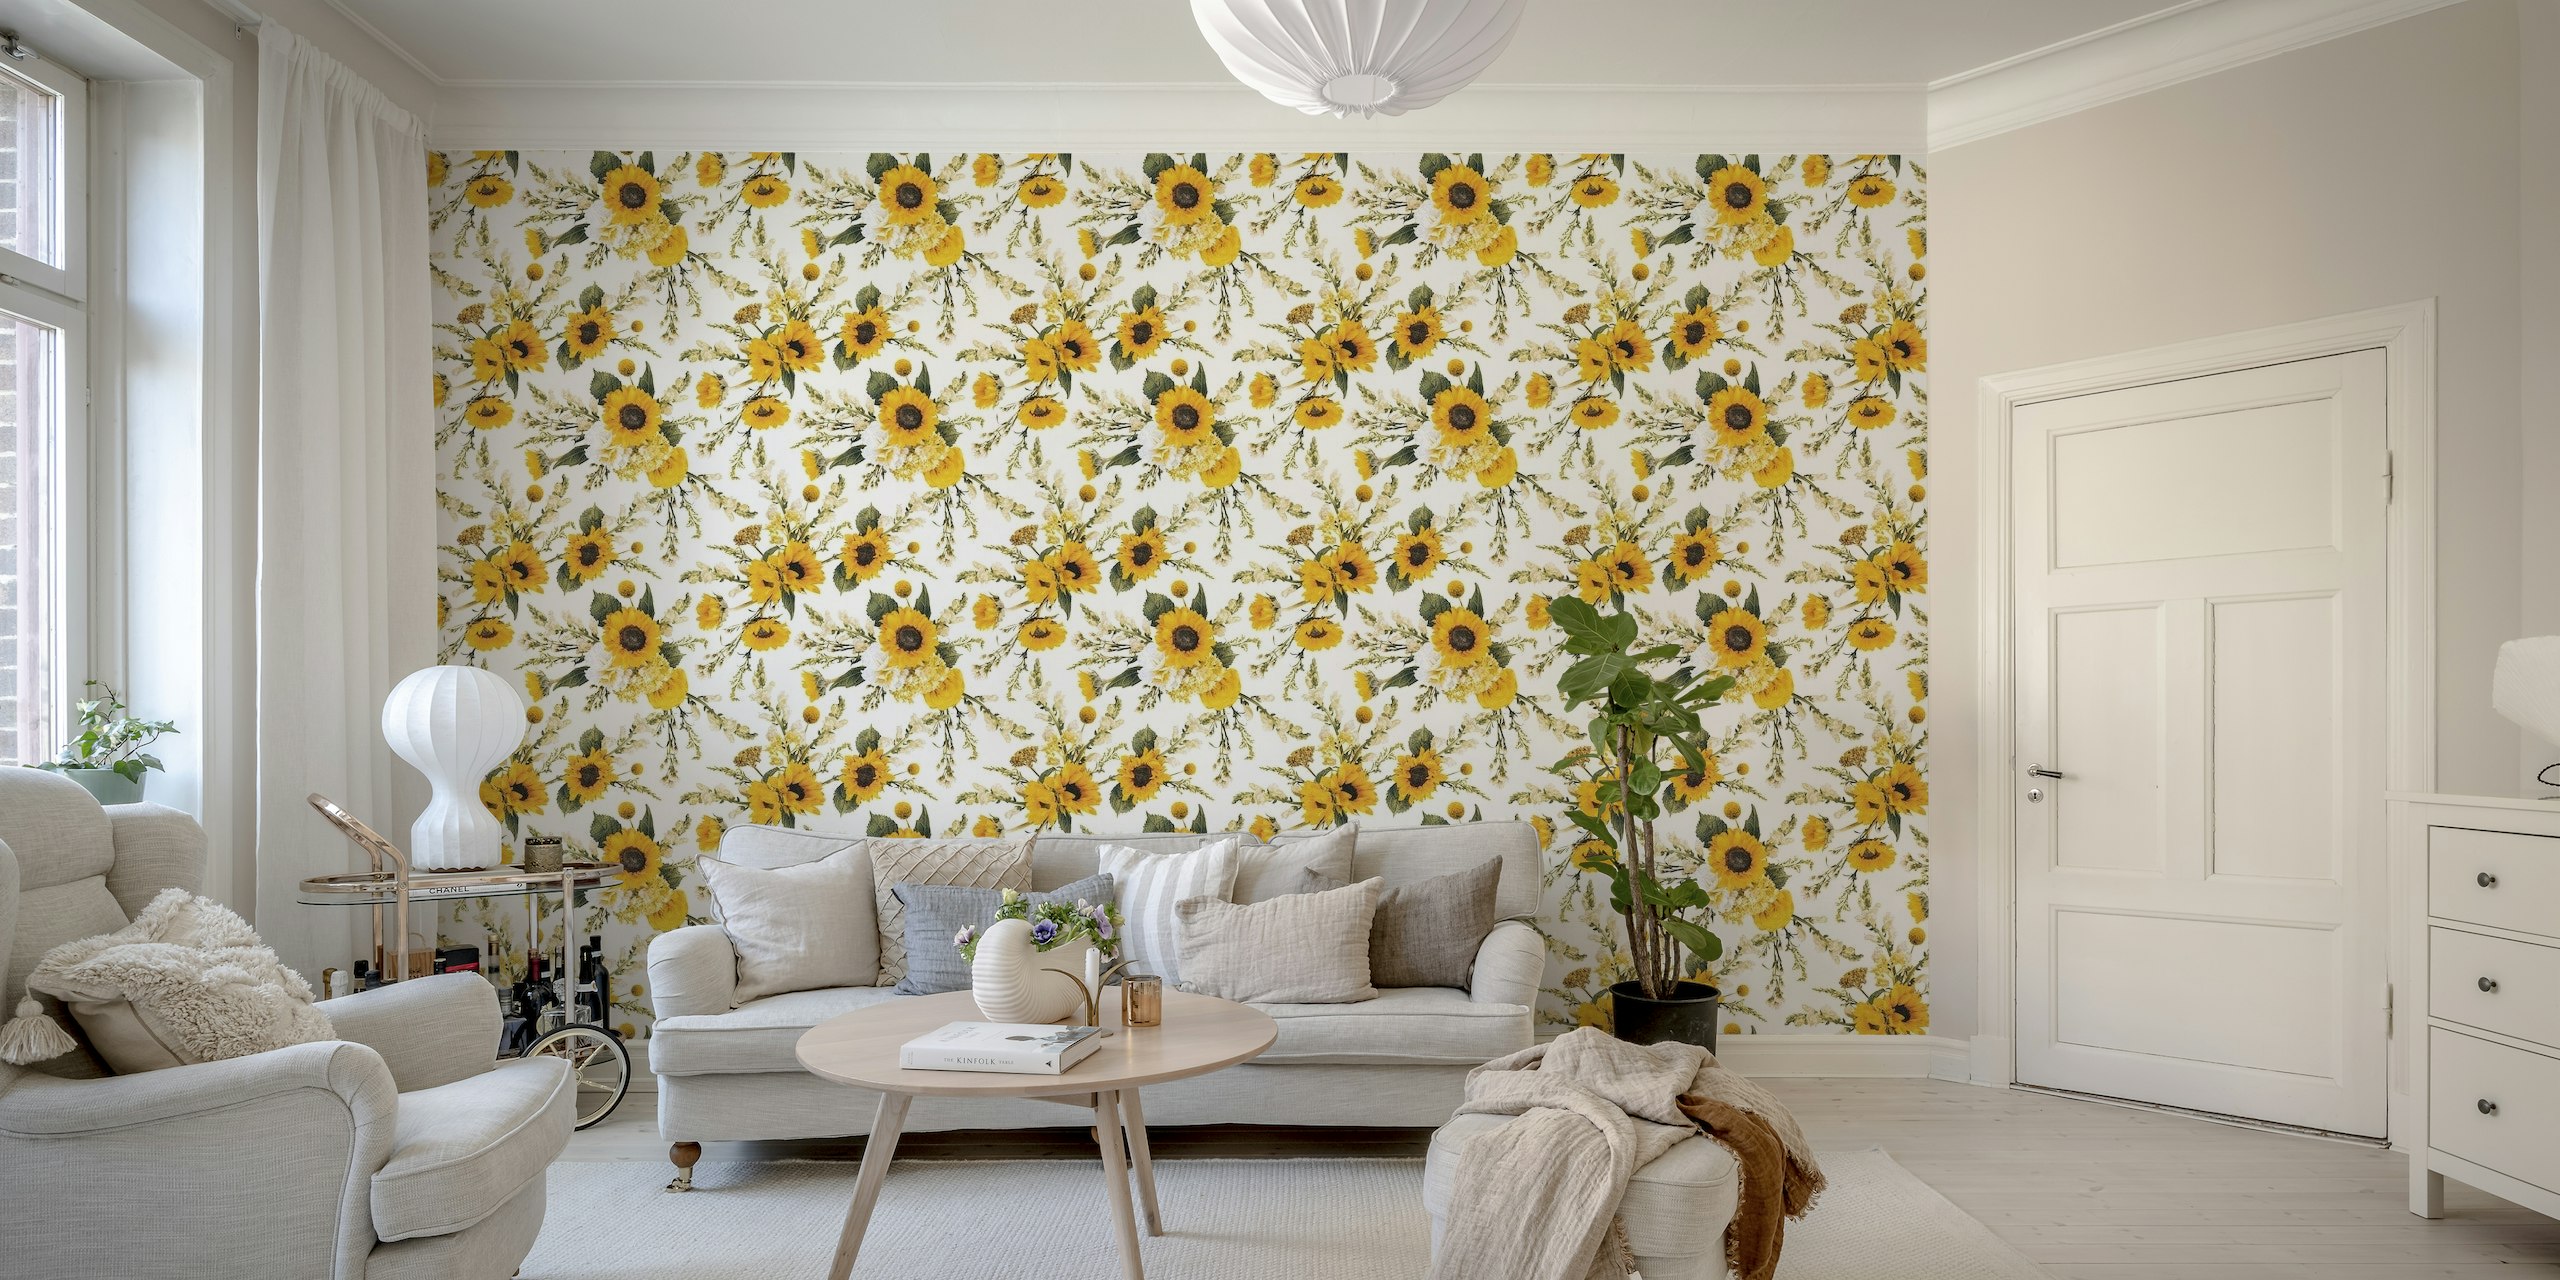 Helles und fröhliches Sonnenblumen-Wandbild mit ineinander verschlungenen Wildblumen und Grünpflanzen